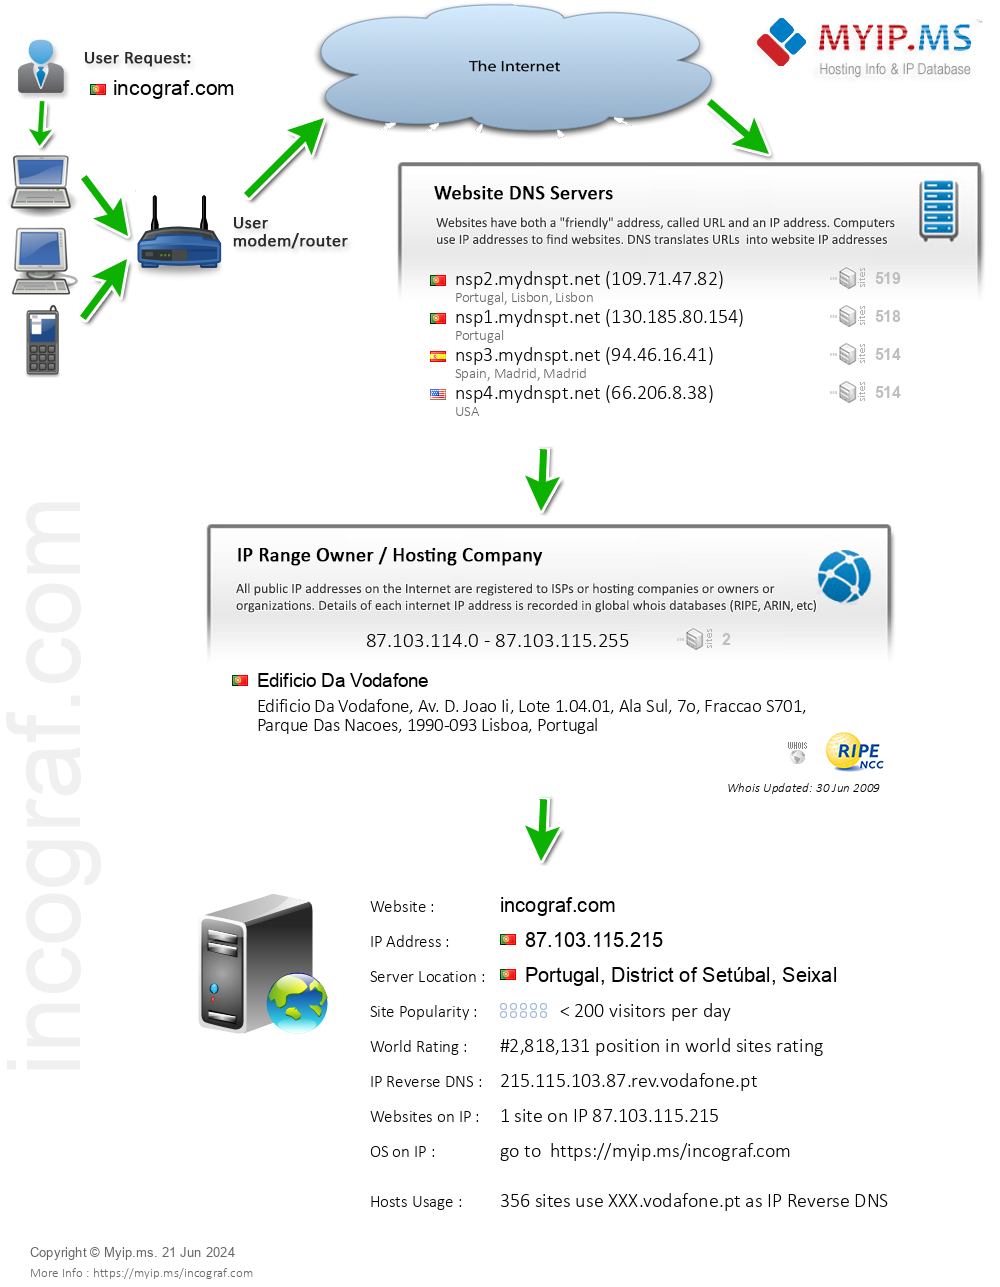 Incograf.com - Website Hosting Visual IP Diagram